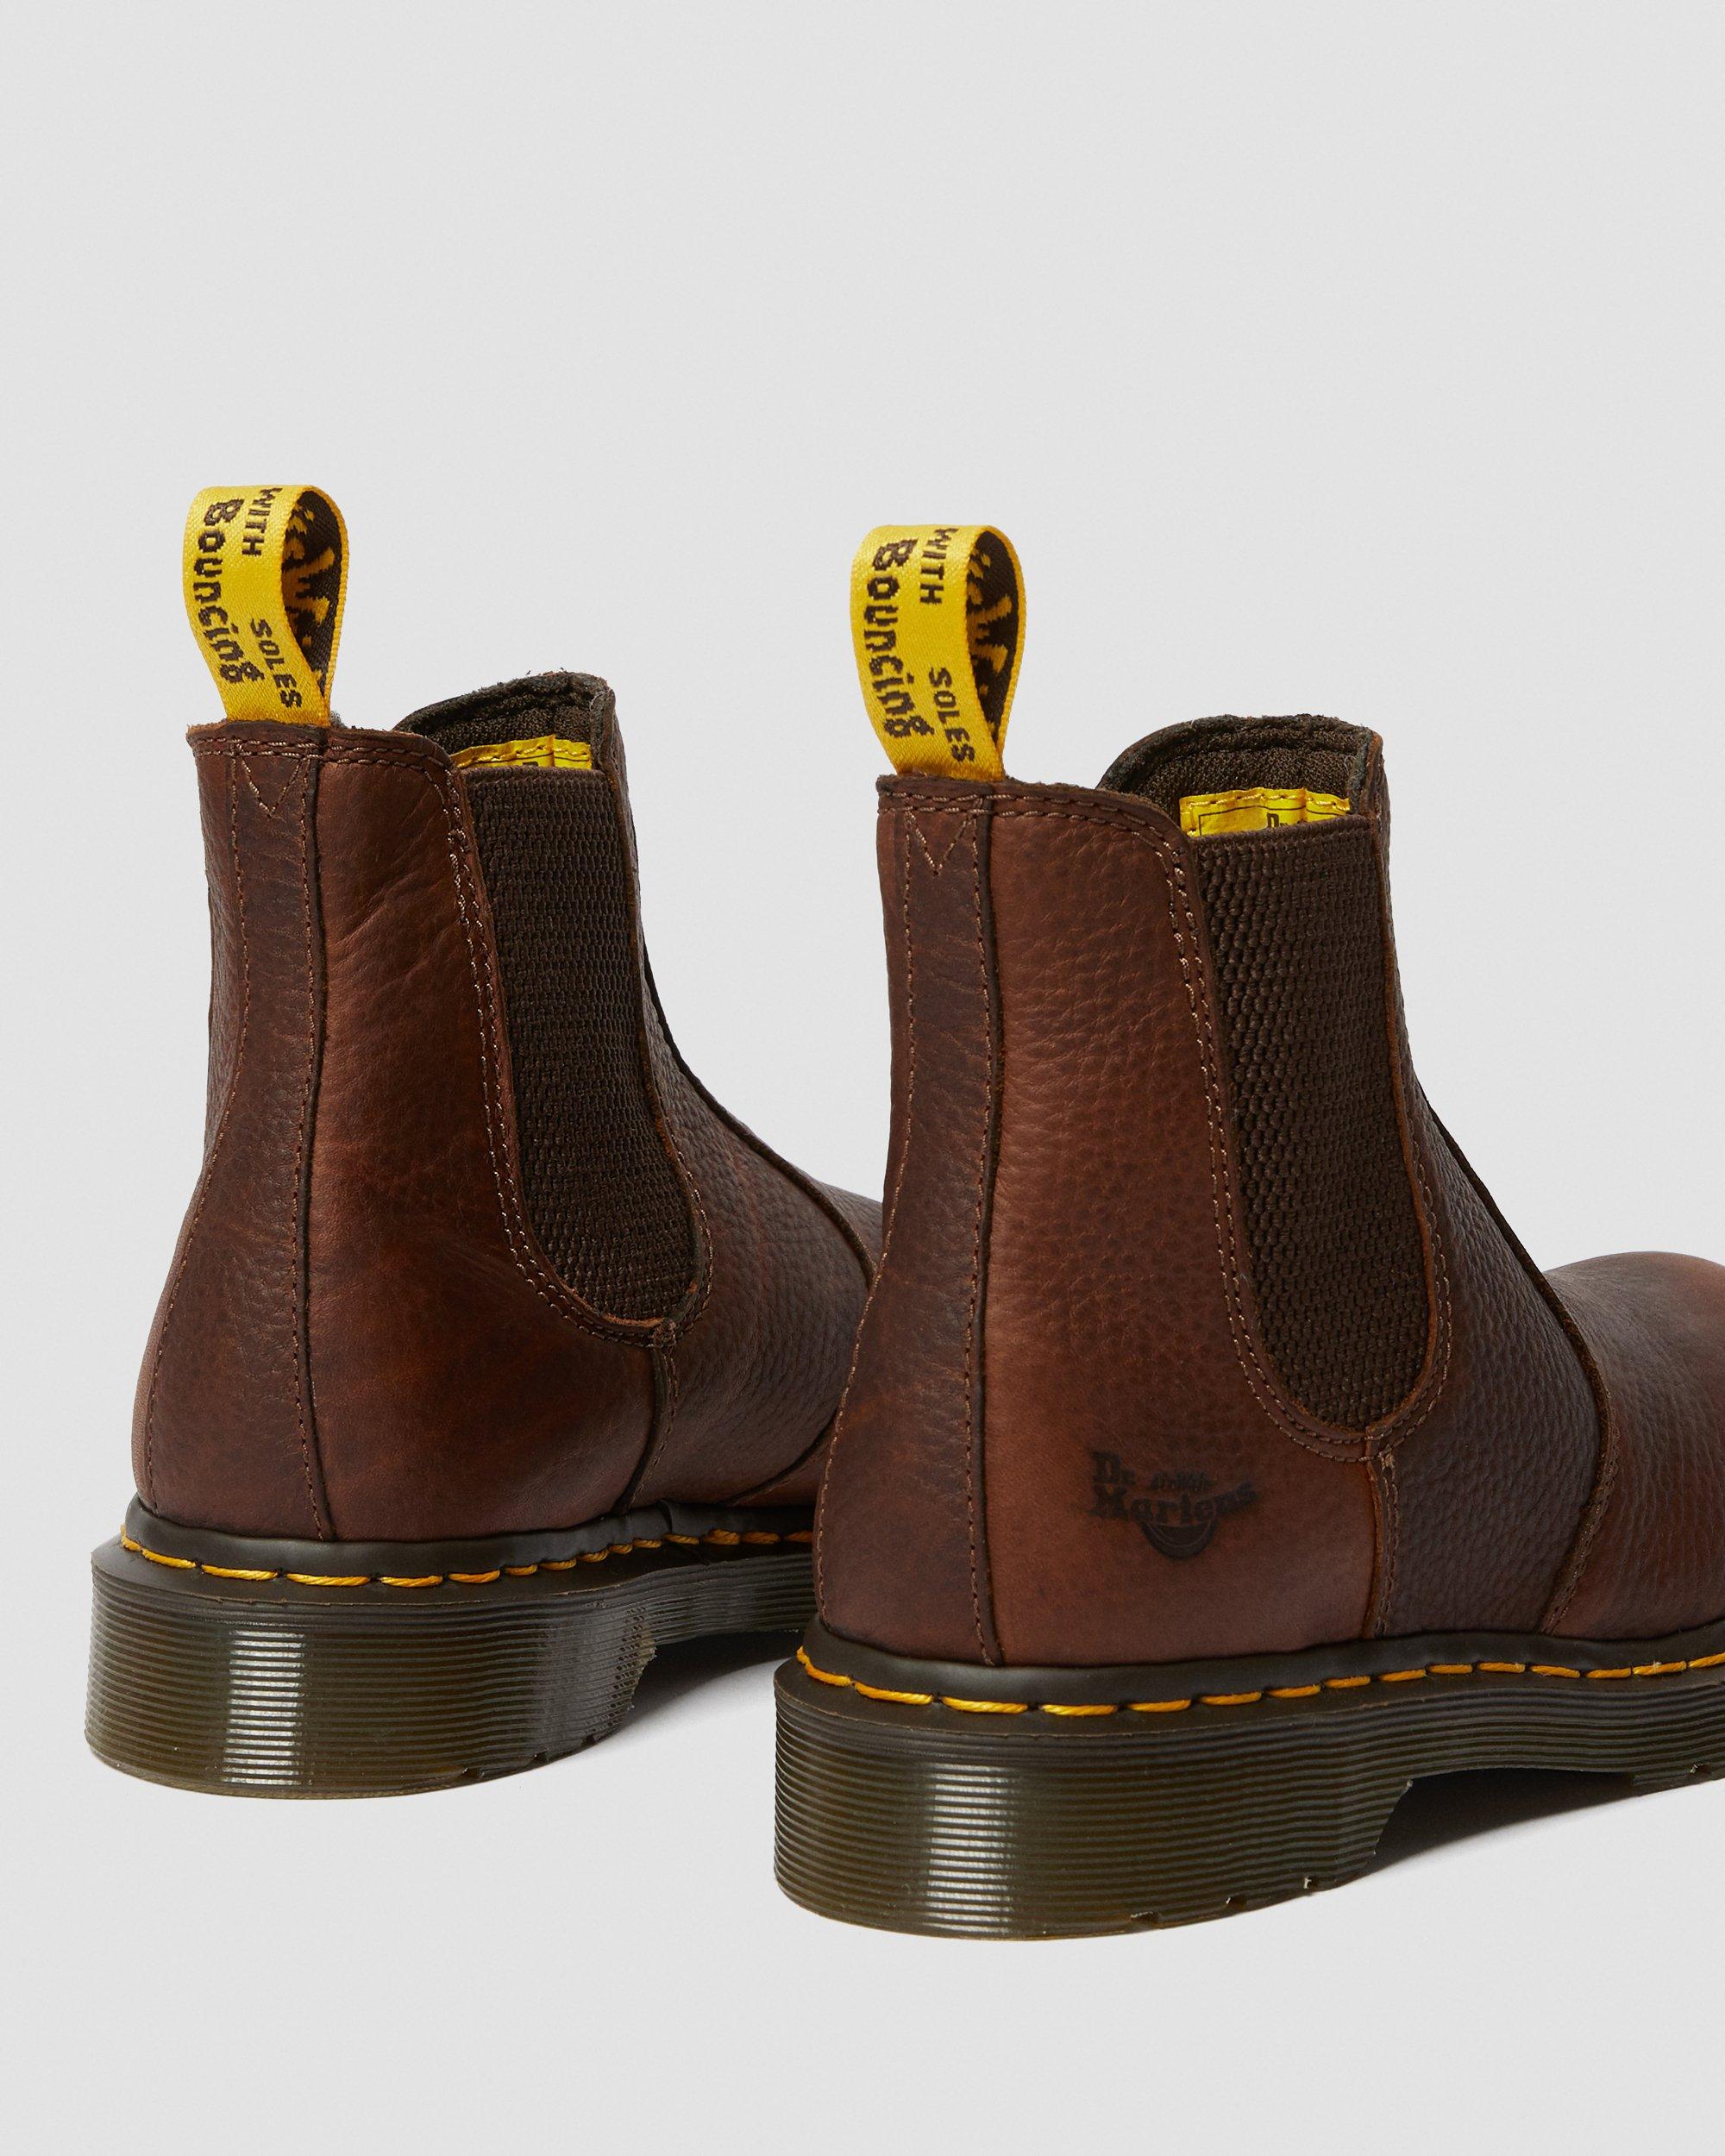 Trouwens suspensie prototype Arbor Women's Steel Toe Work Boots | Dr. Martens